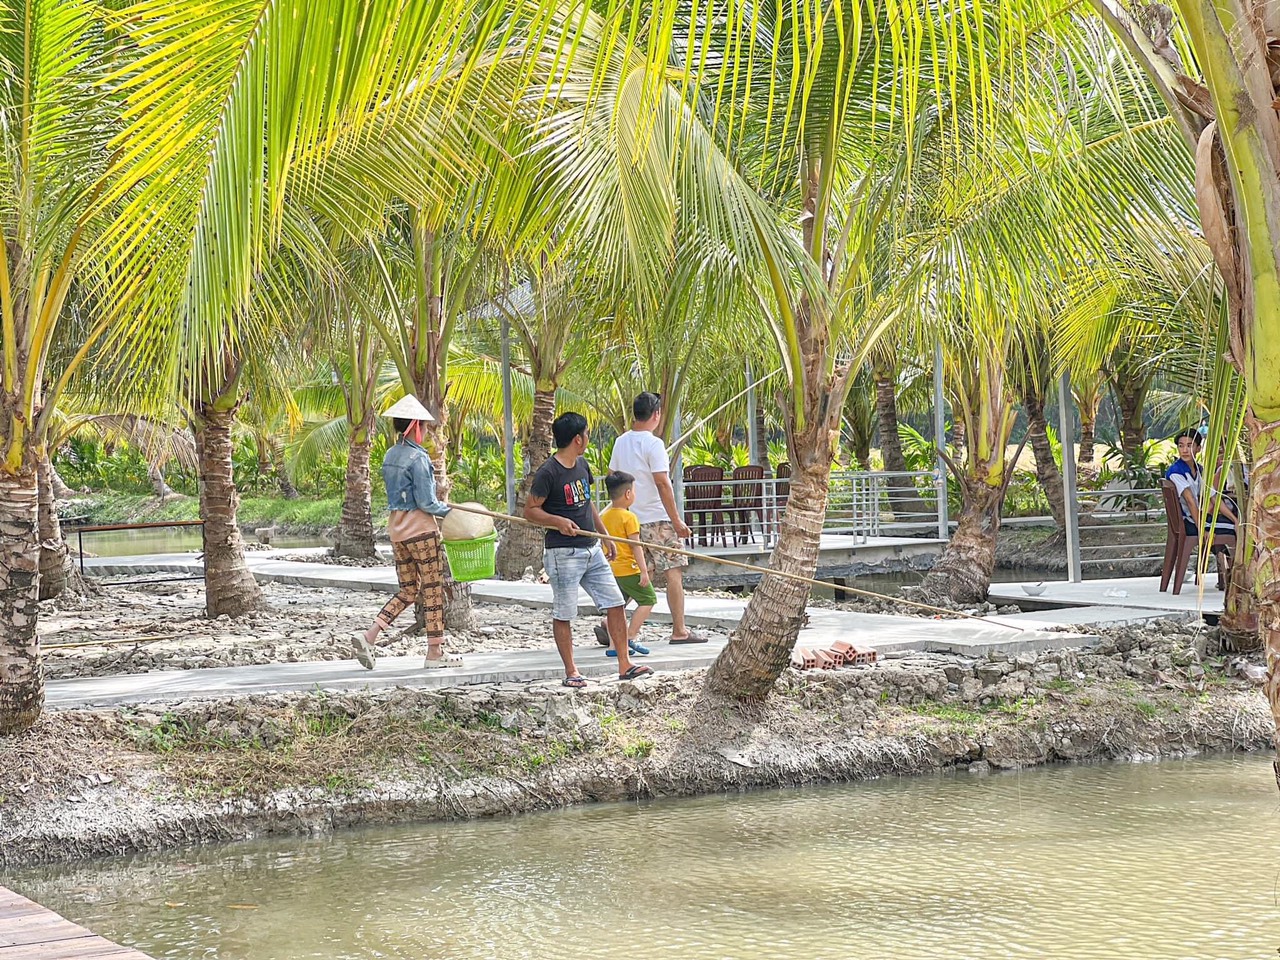 Du khách trải nghiệm câu cá giữa vườn dừa. Ảnh: Tạ Quang